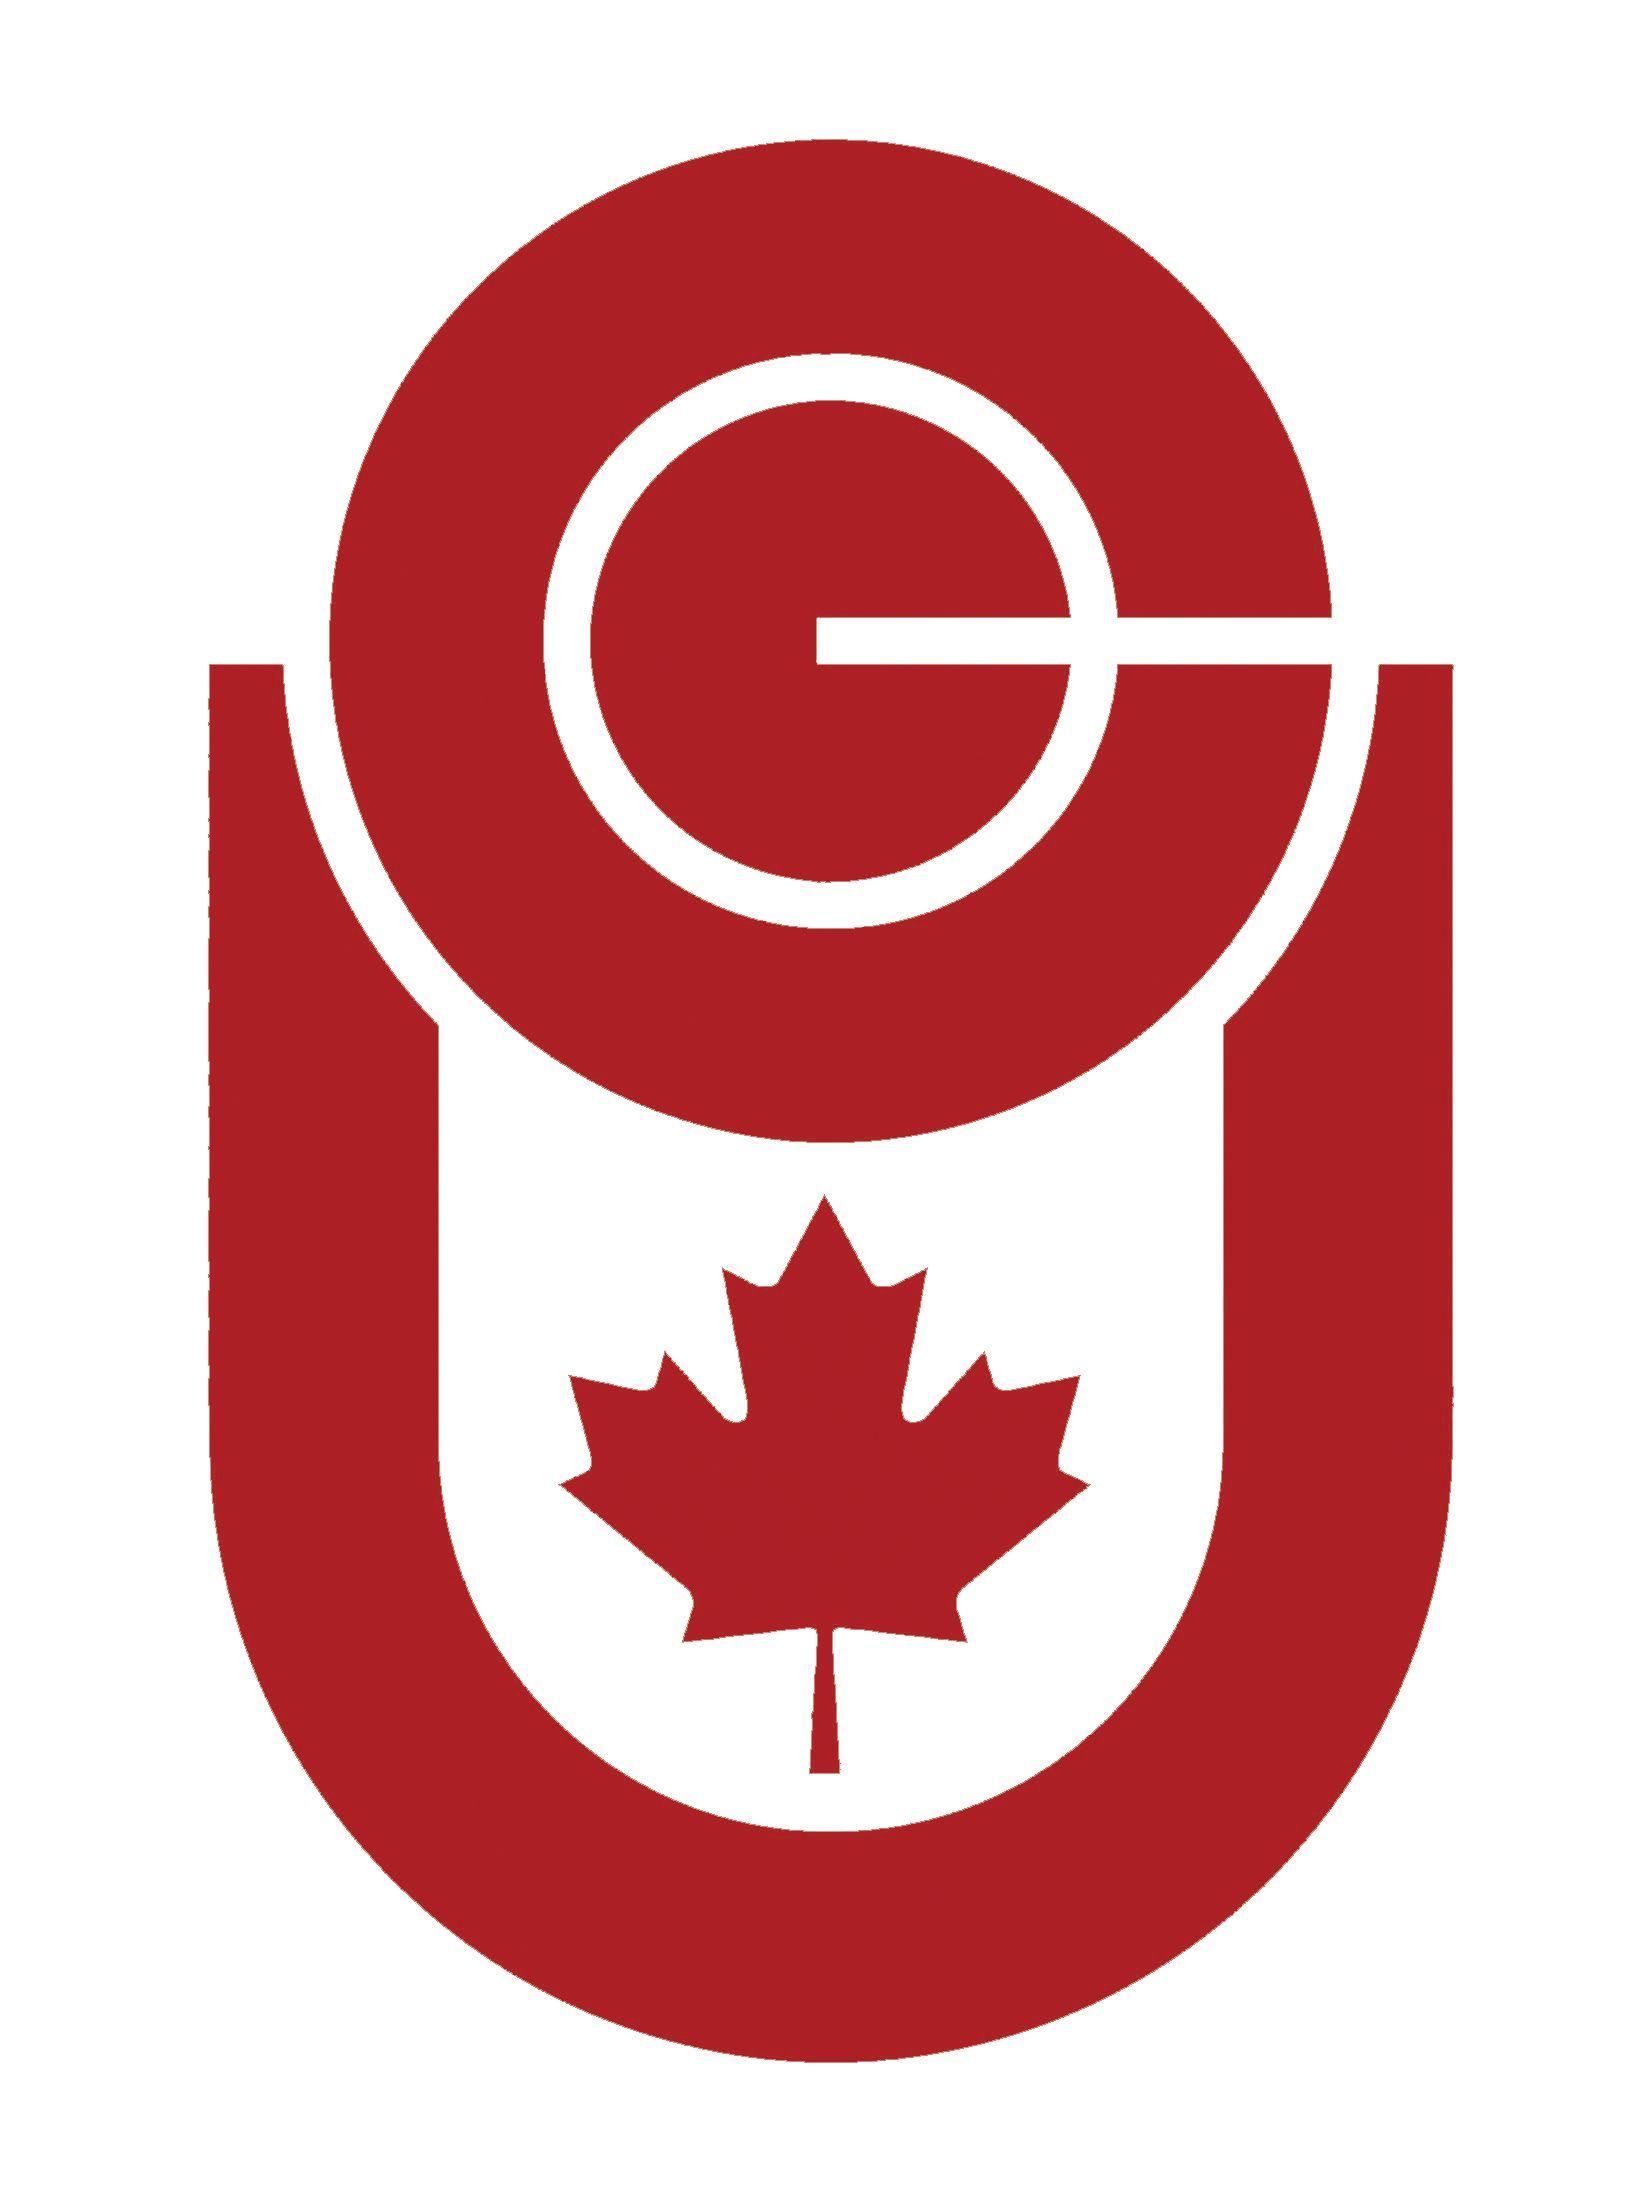 Jpeg Logo - File:CCU Logo.jpeg - Wikimedia Commons